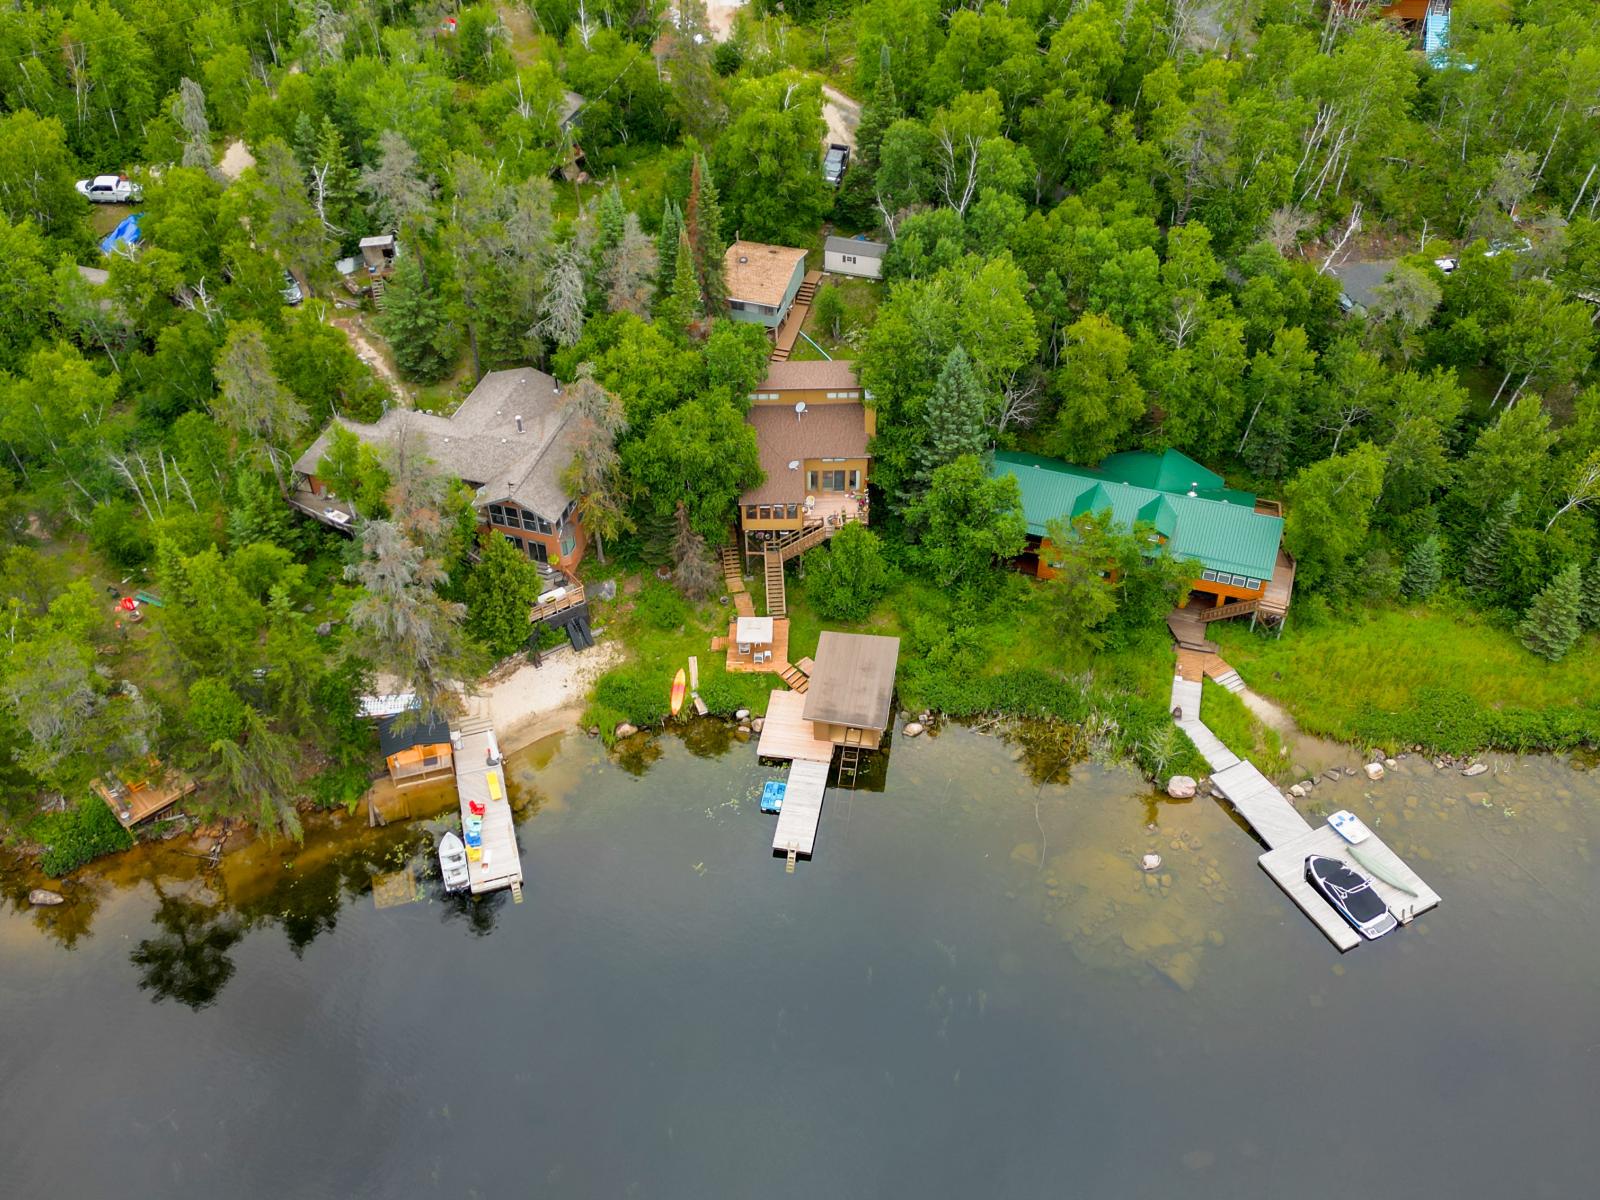 West Hawk Lake - Moonlight Bay Lakefront Cottage for Sale